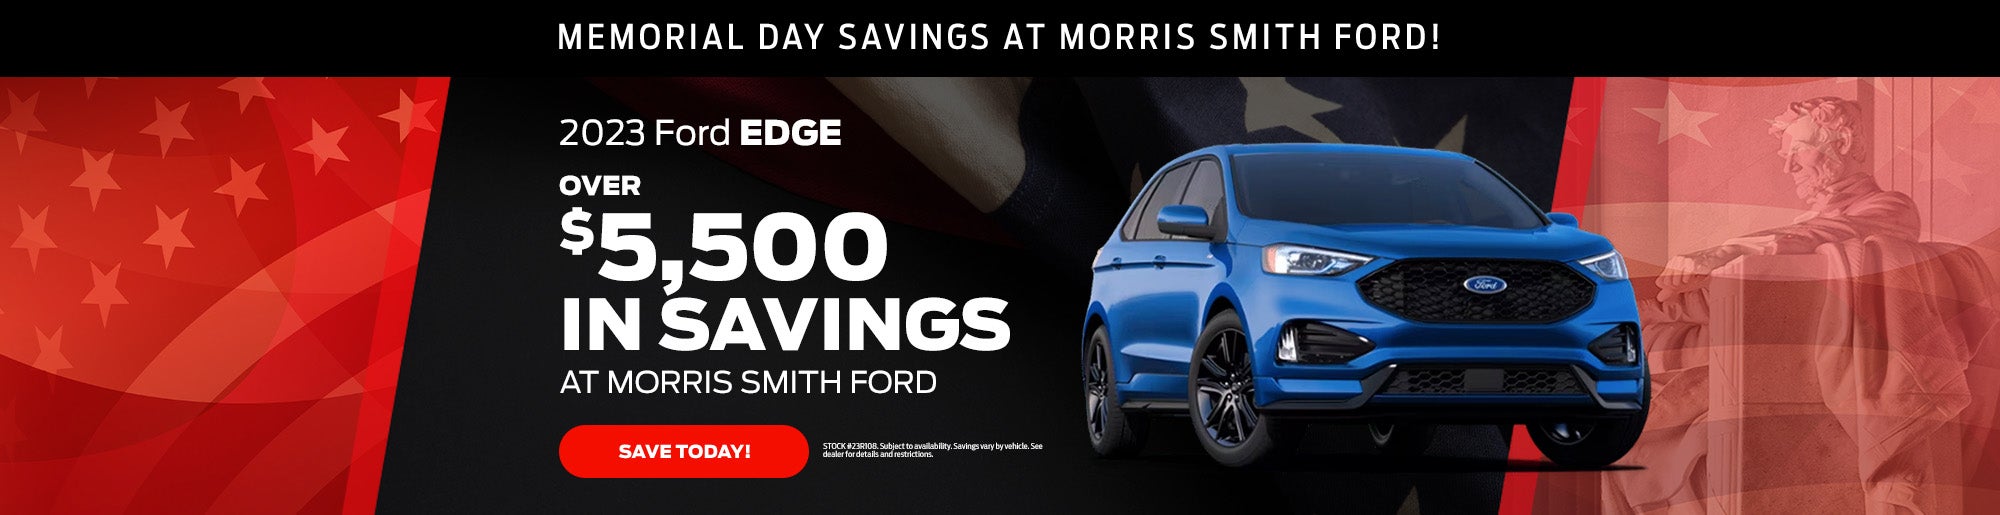 Ford Edge Memorial Day Savings